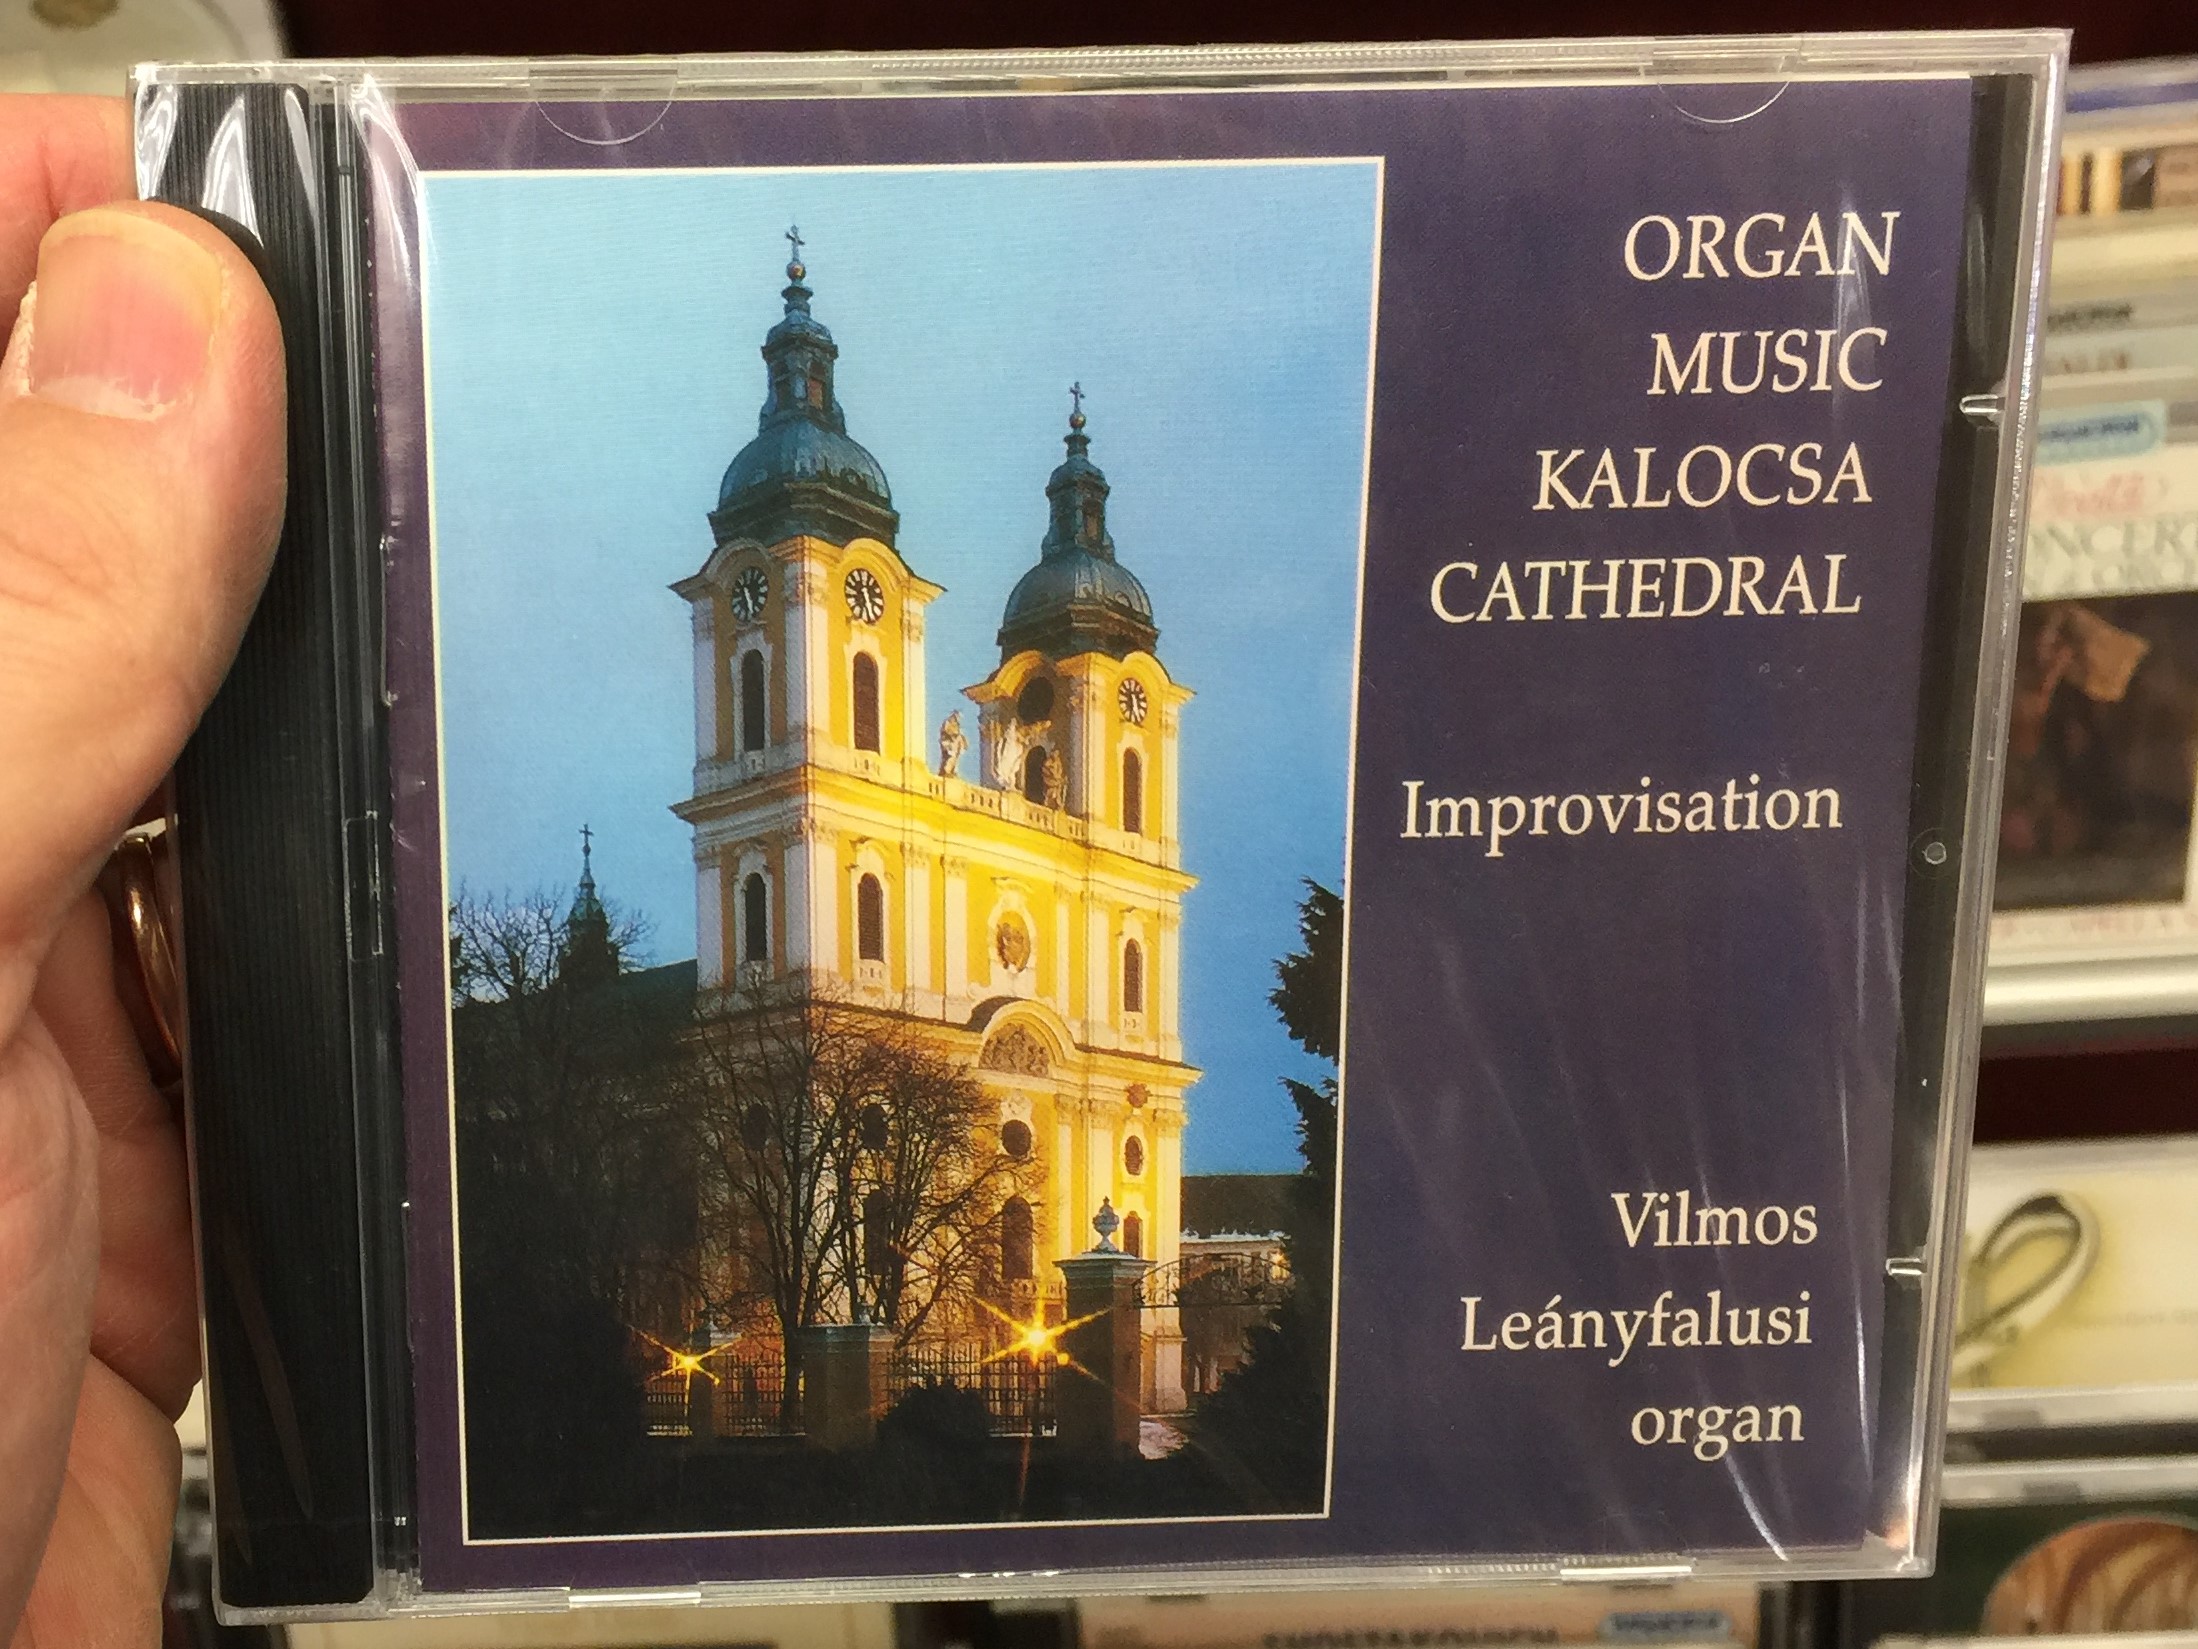 organ-music-kalocsa-cathedral-improvisation-vilmos-leanyfalusi-organ-audio-cd-2005-4260364603491-1-.jpg